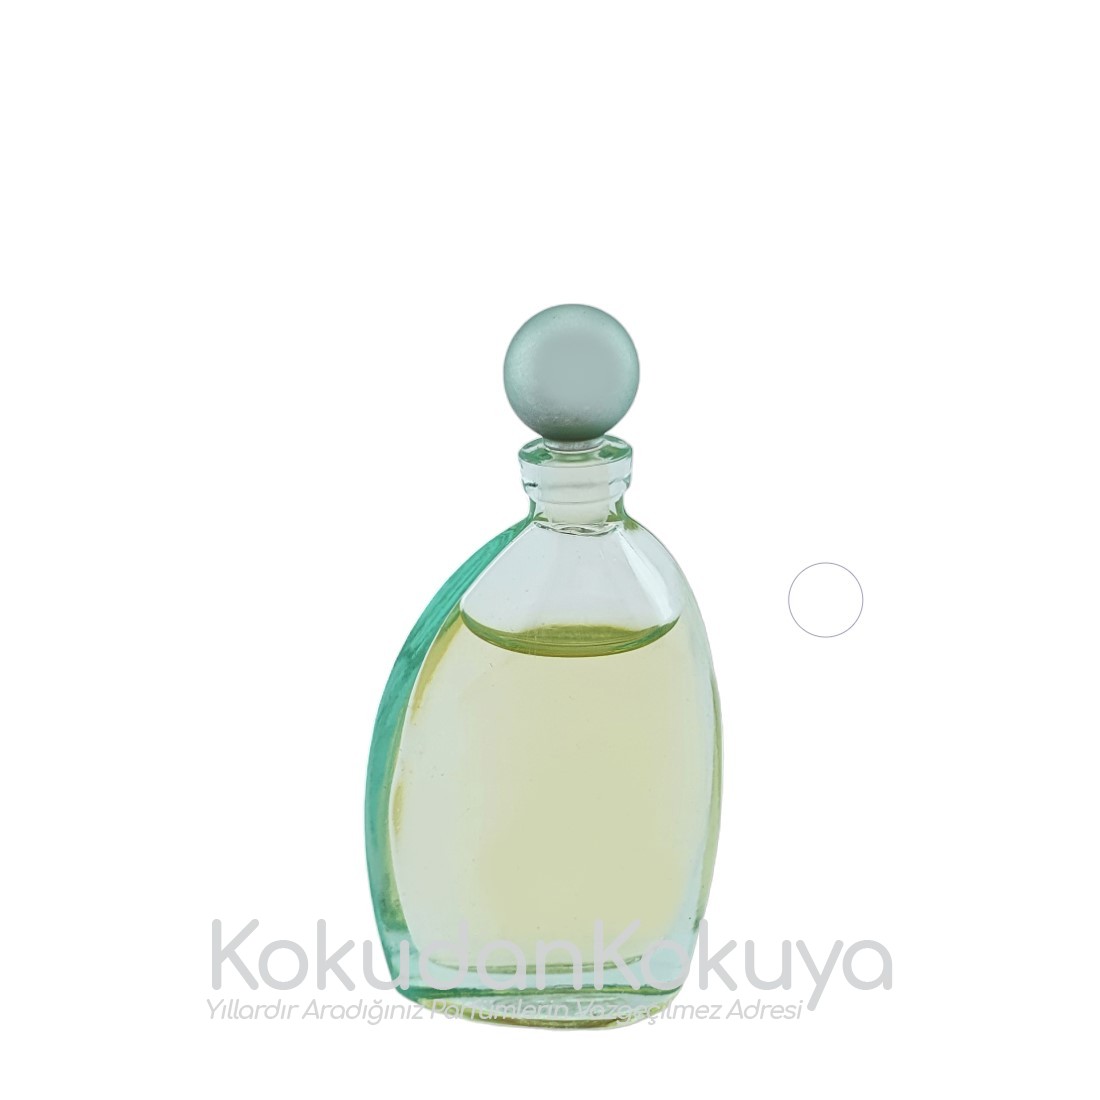 CACHAREL Eau D'Eden (Vintage) Parfüm Kadın 5ml Minyatür (Mini Perfume) Dökme 